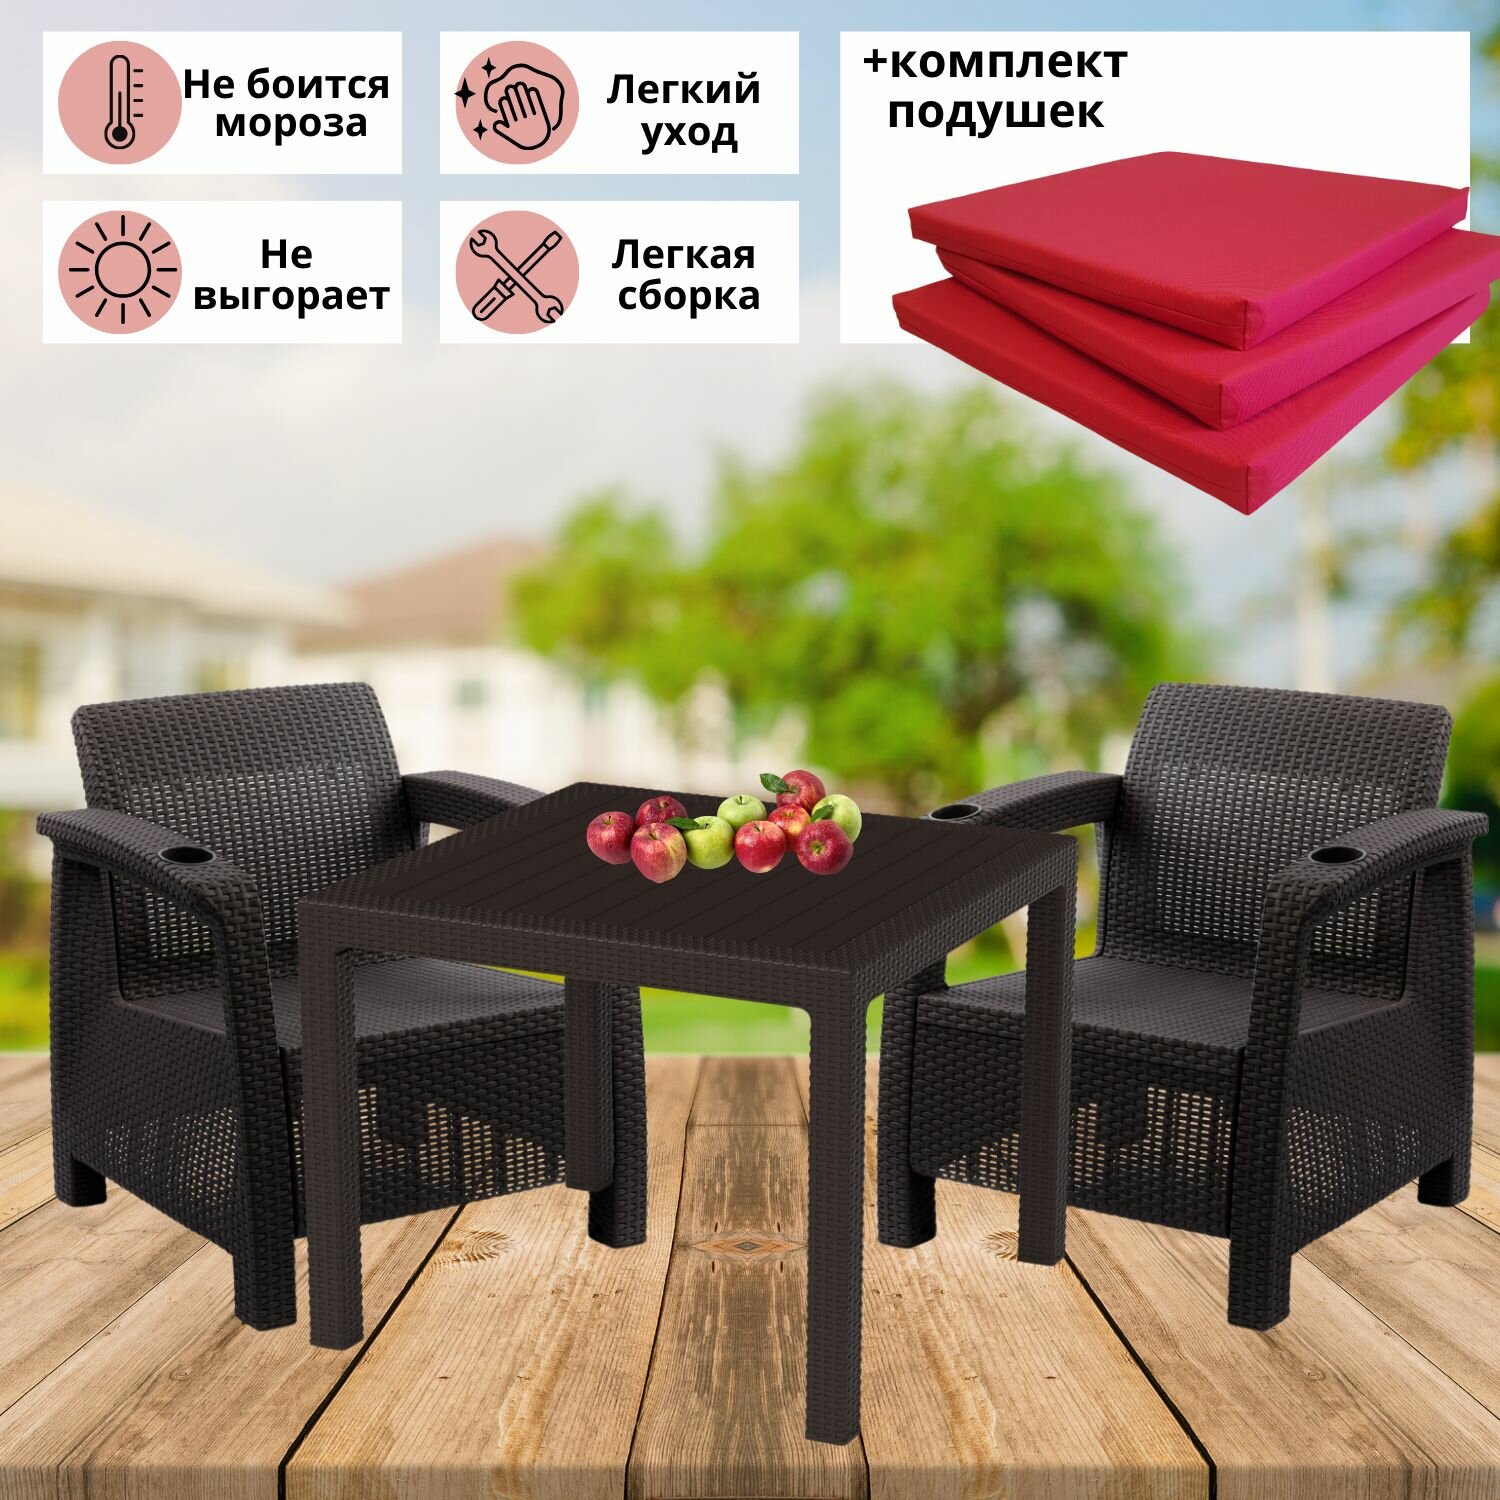 Садовая мебель. Набор дачный на 2 персоны (2 кресла + стол) искуственный ротанг мокко (красные подушки)